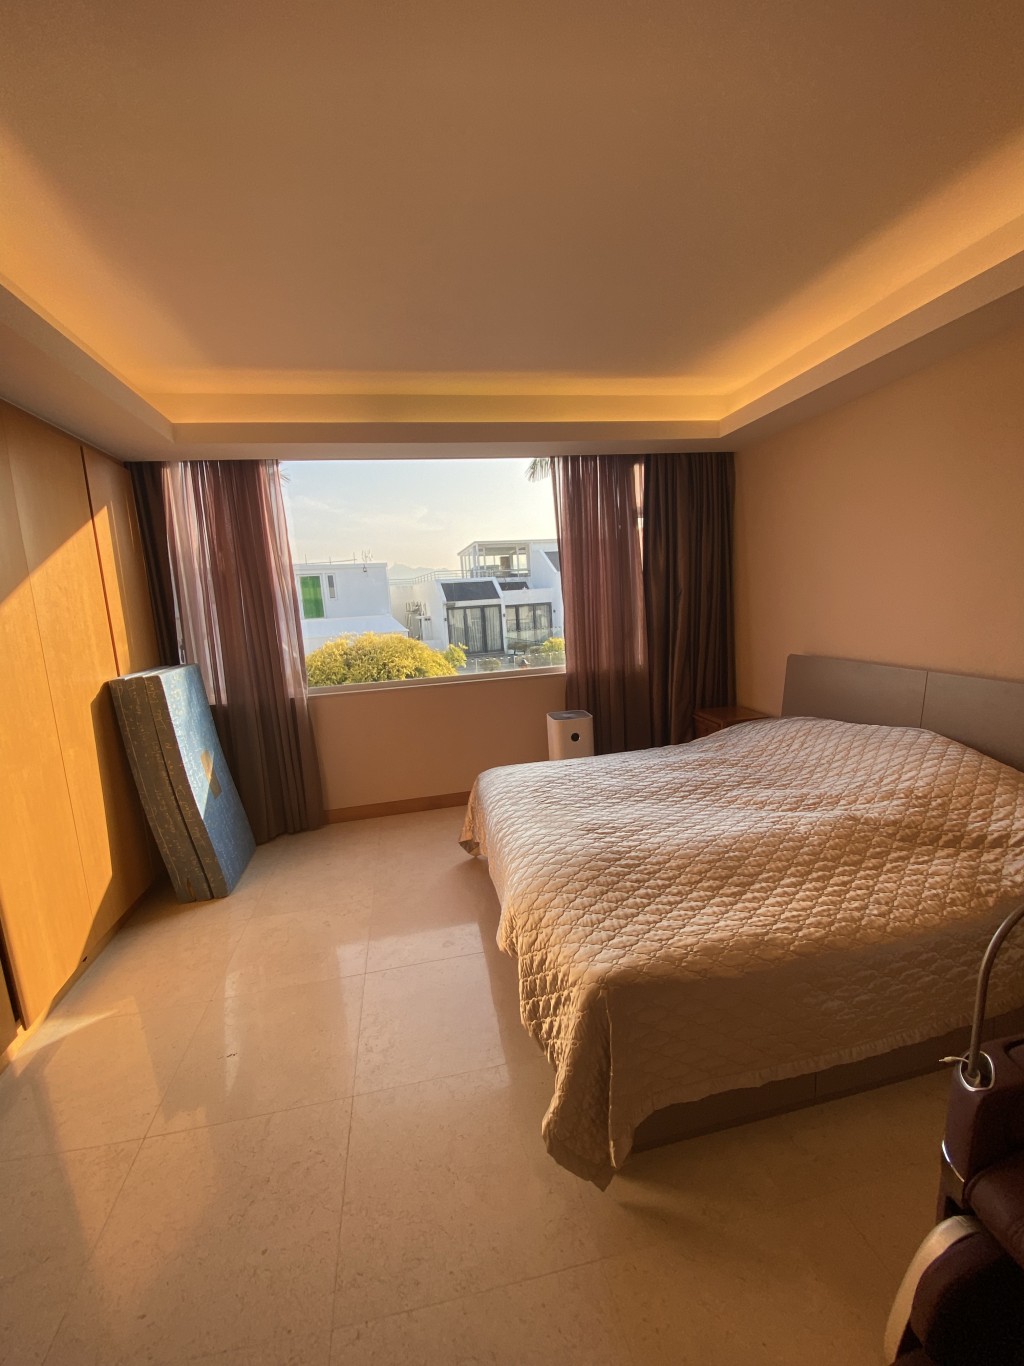 圖中睡房以白色為主調， 簡約清新，同時能營造出空間感。